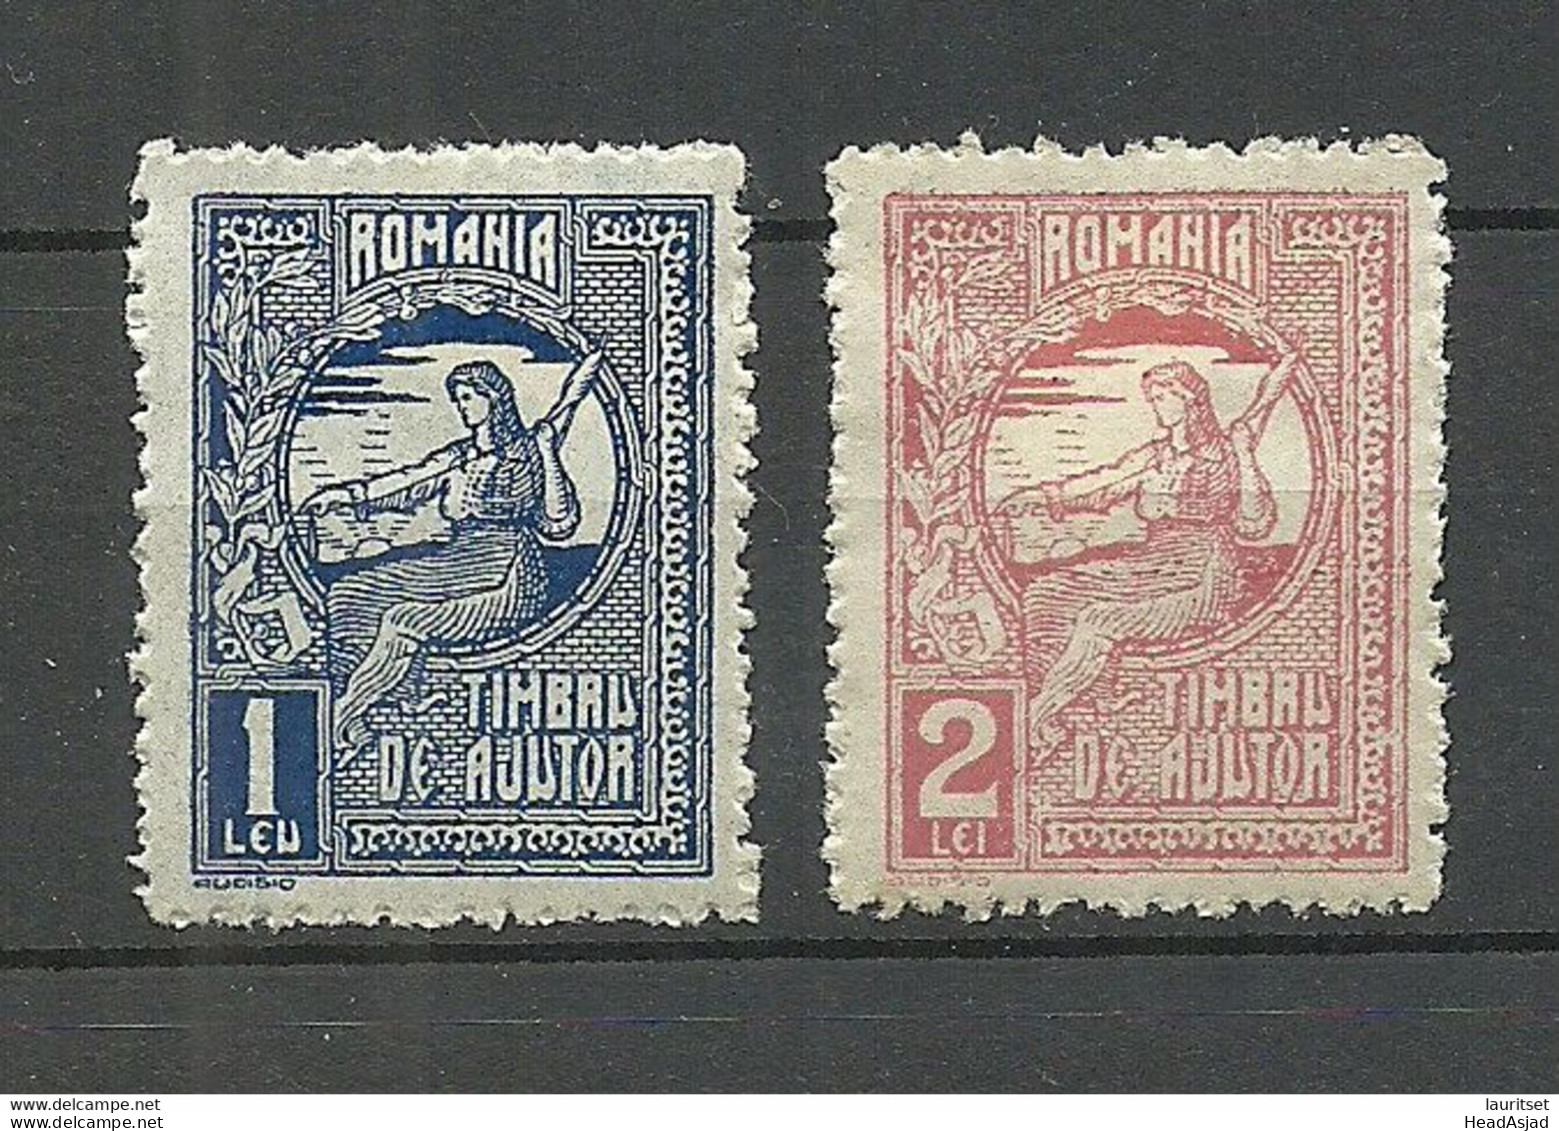 ROMANIA Rumänien Timbru De Ajutor 1 & 2 Leu * - Fiscale Zegels